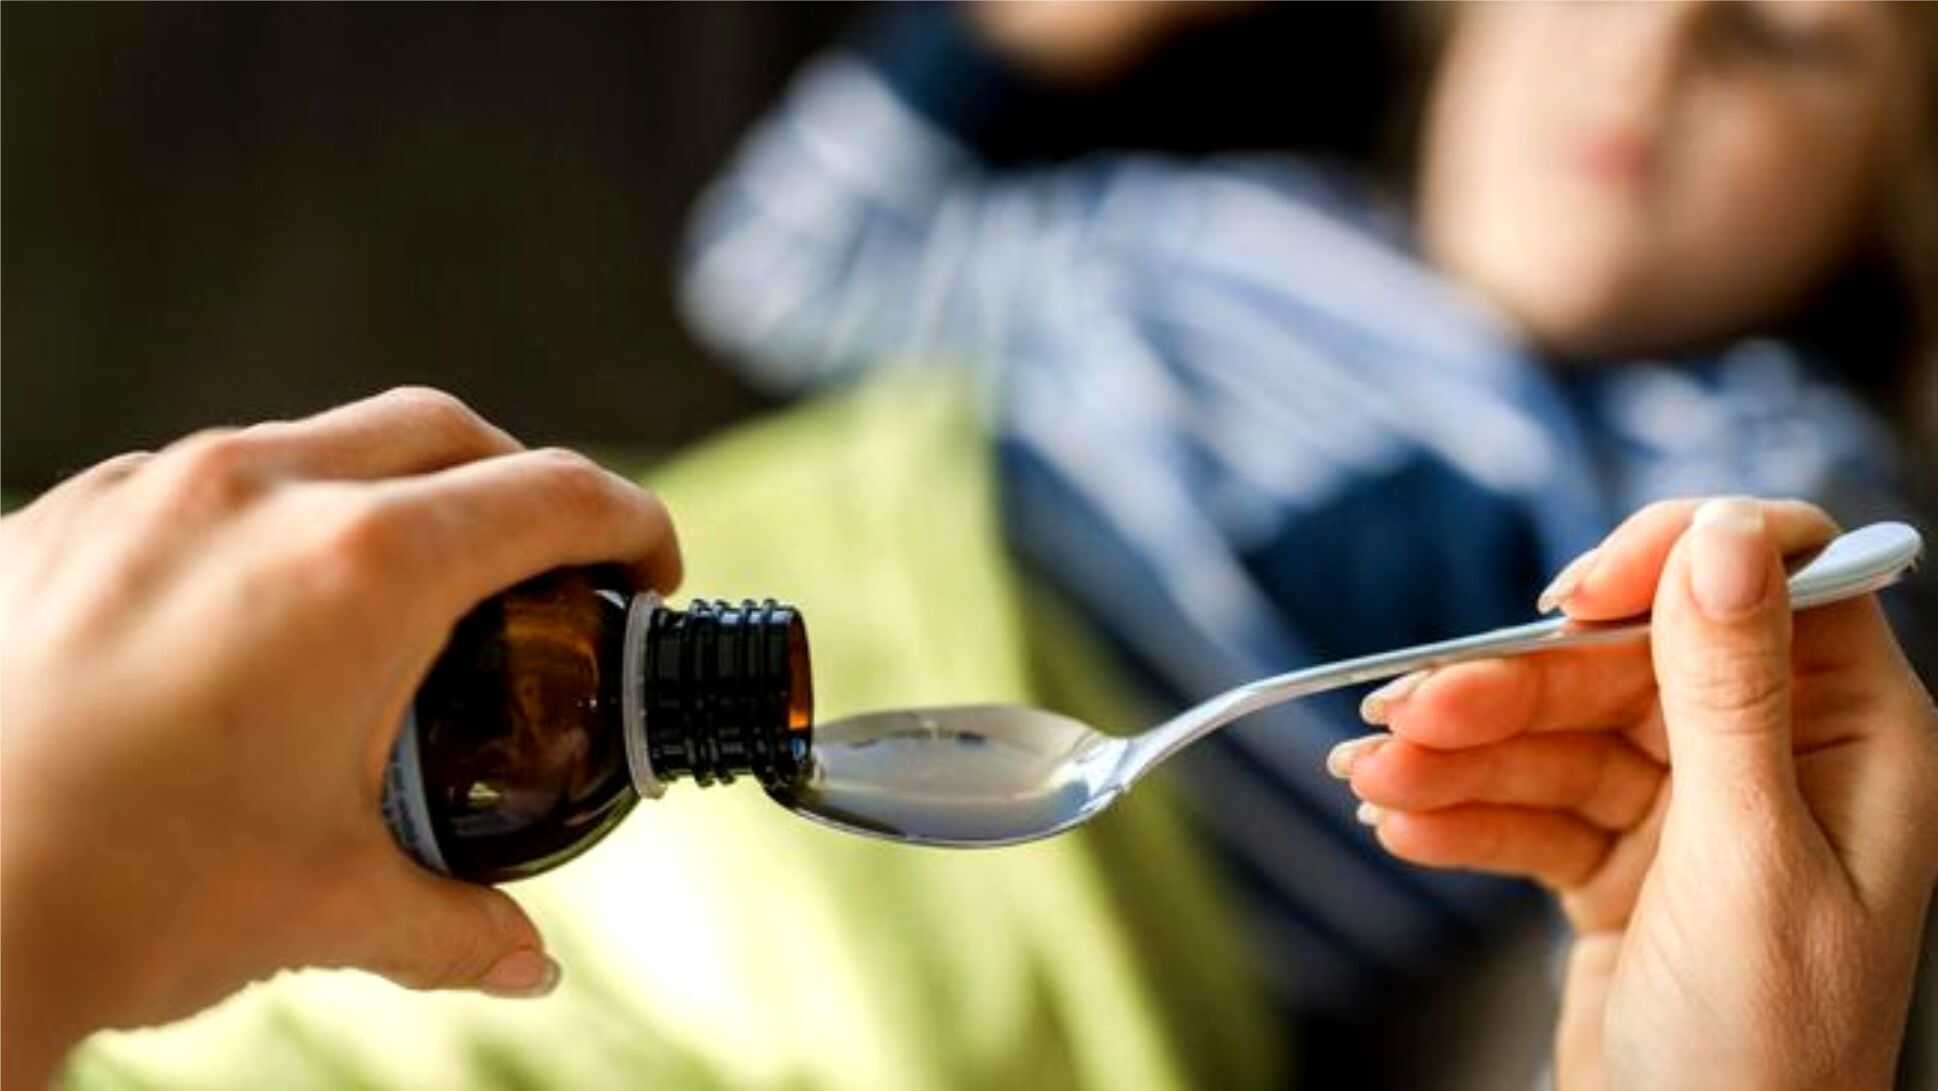 Kemenkes Imbau untuk Tidak Memberikan Obat Sirup Pada Anak Usia di Bawah 5 Tahun